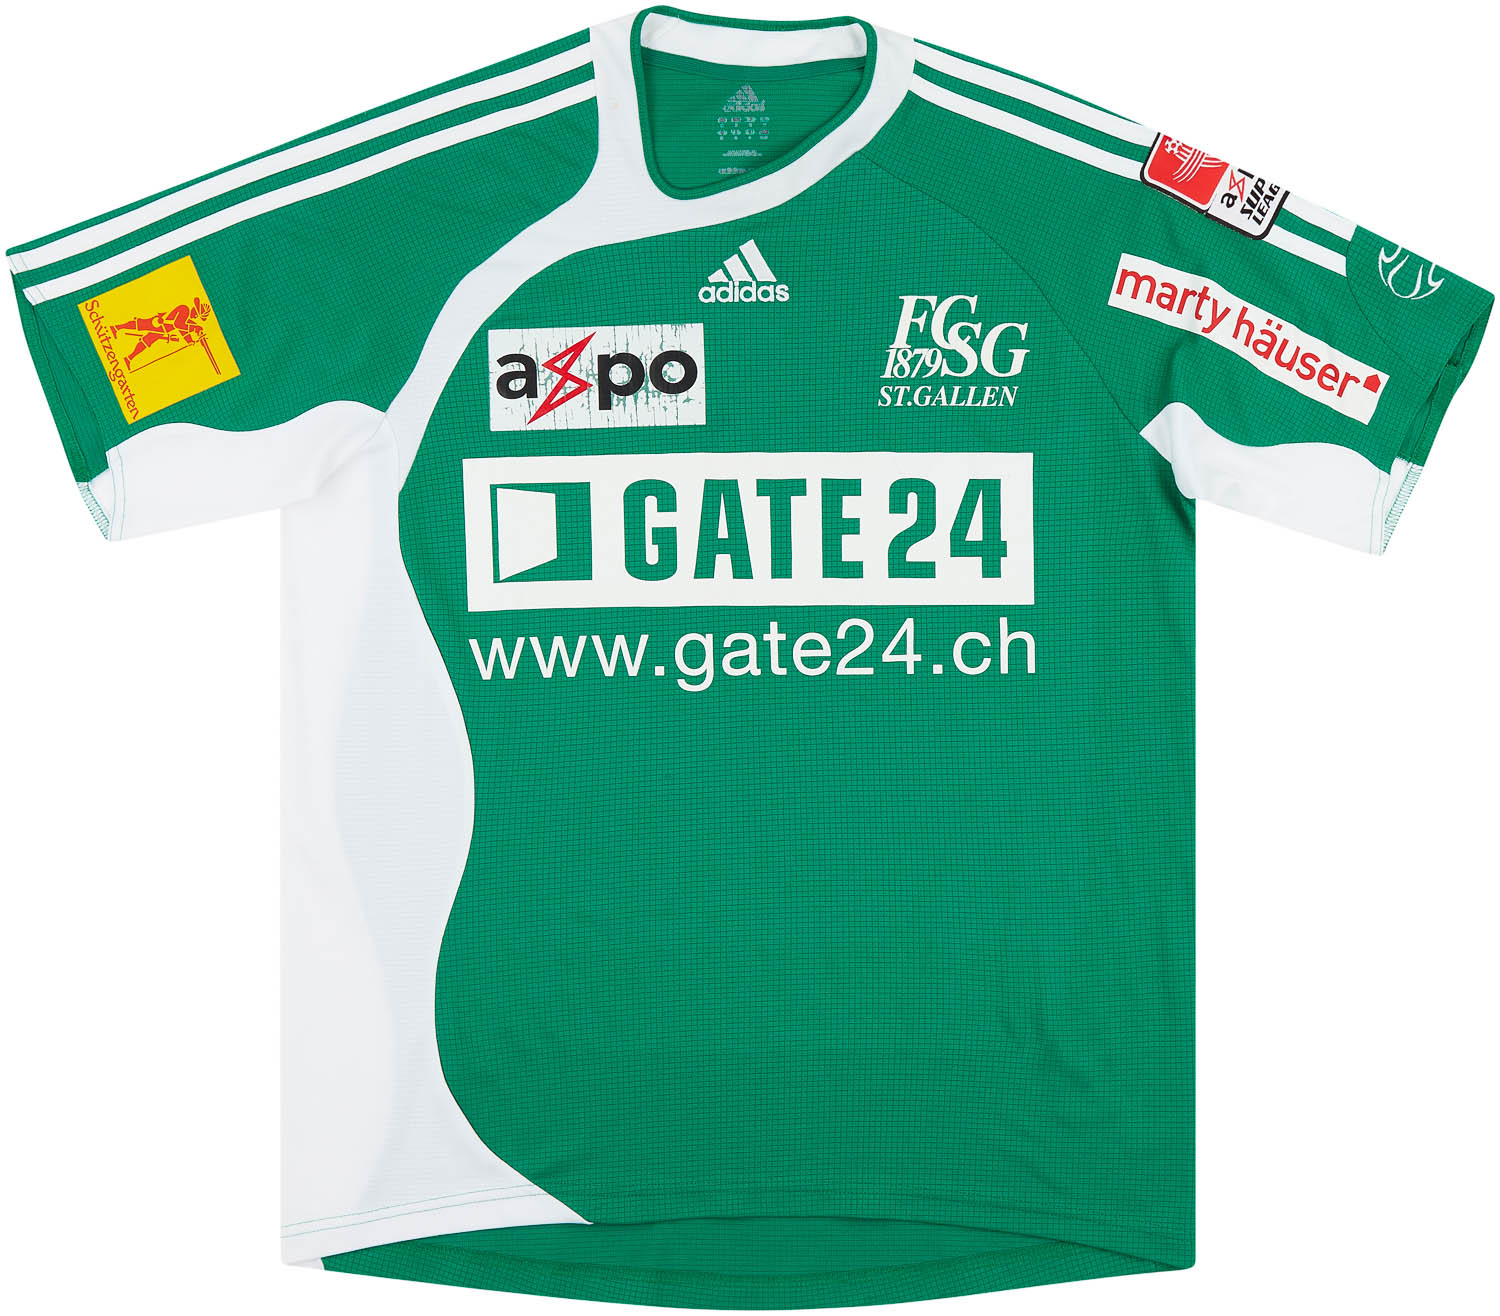 St. Gallen  home shirt  (Original)